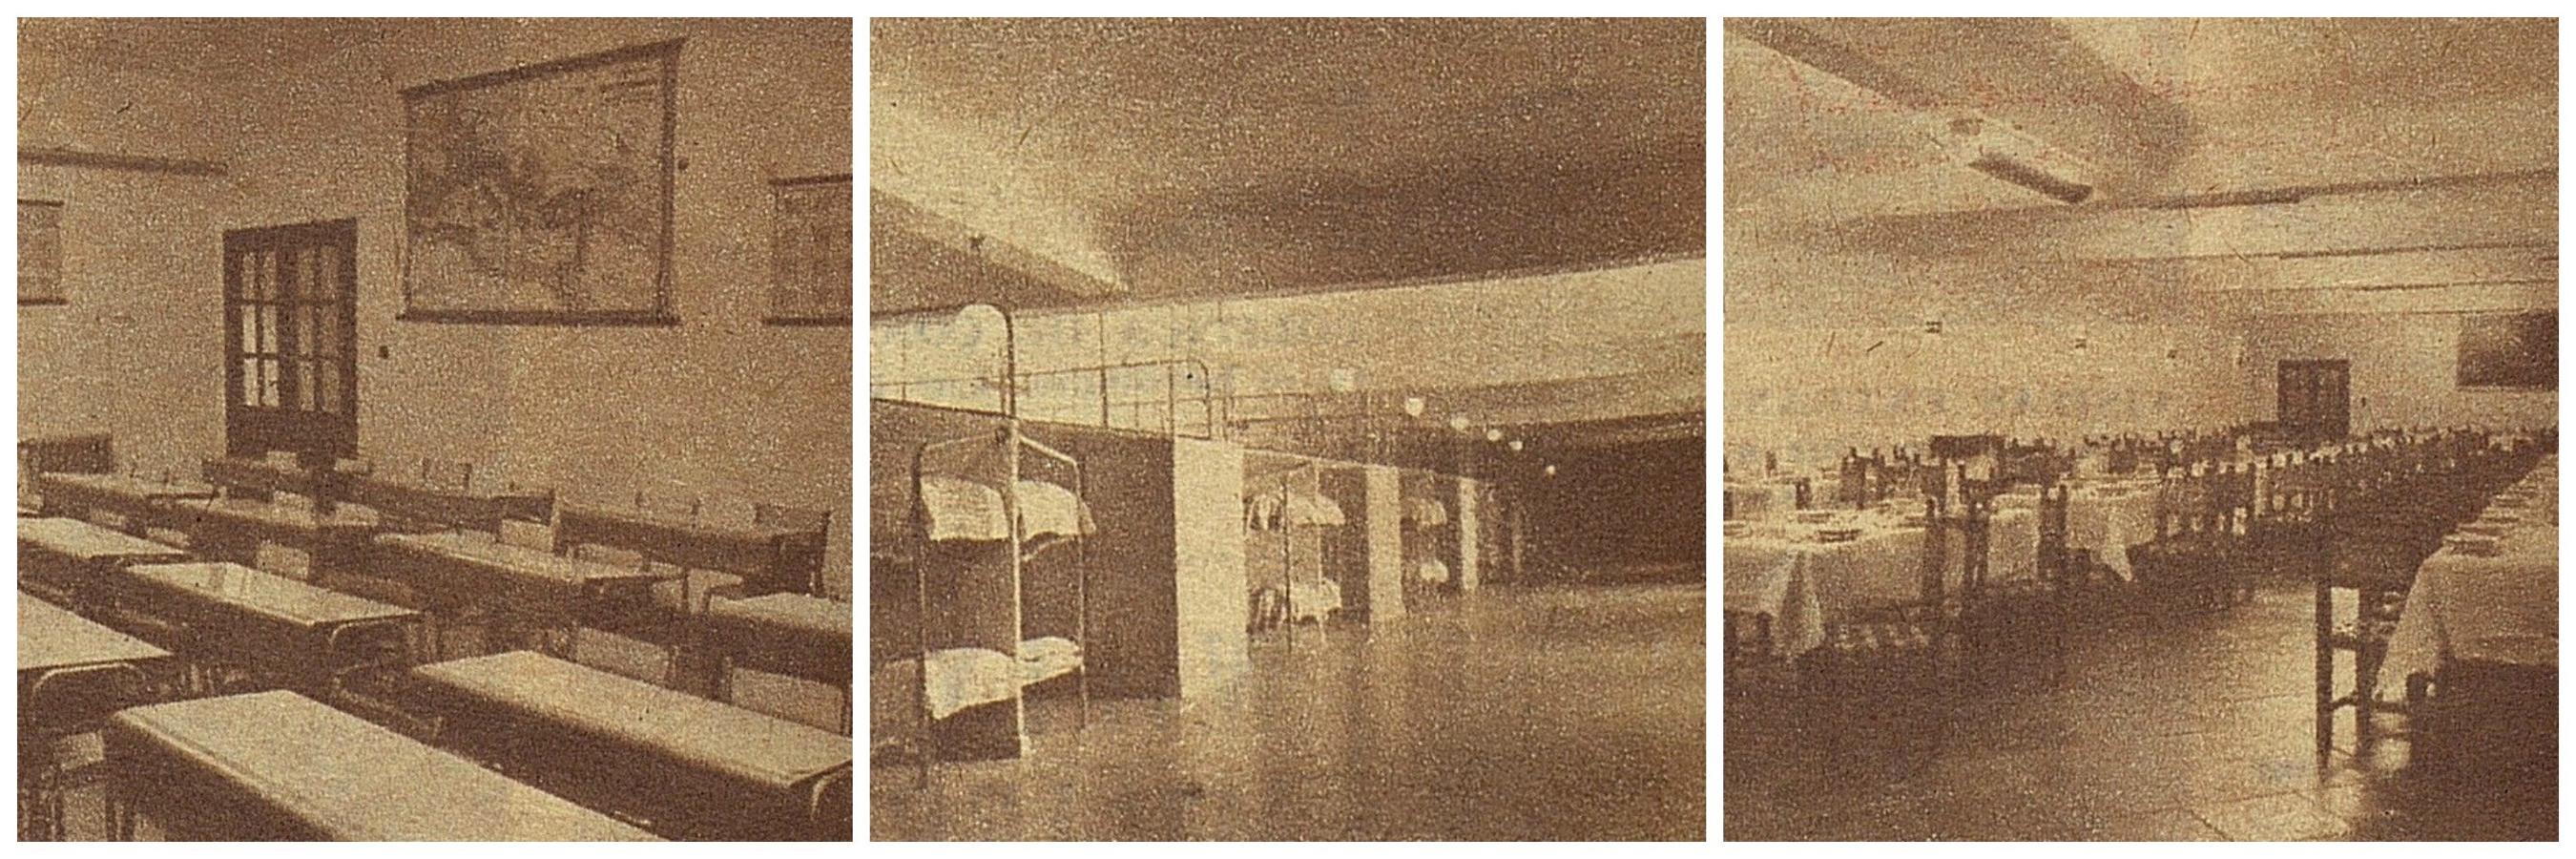 Interiores del Colegio Menor San Servando en el mismo castillo, en un reportaje de El Alcázar de 1958